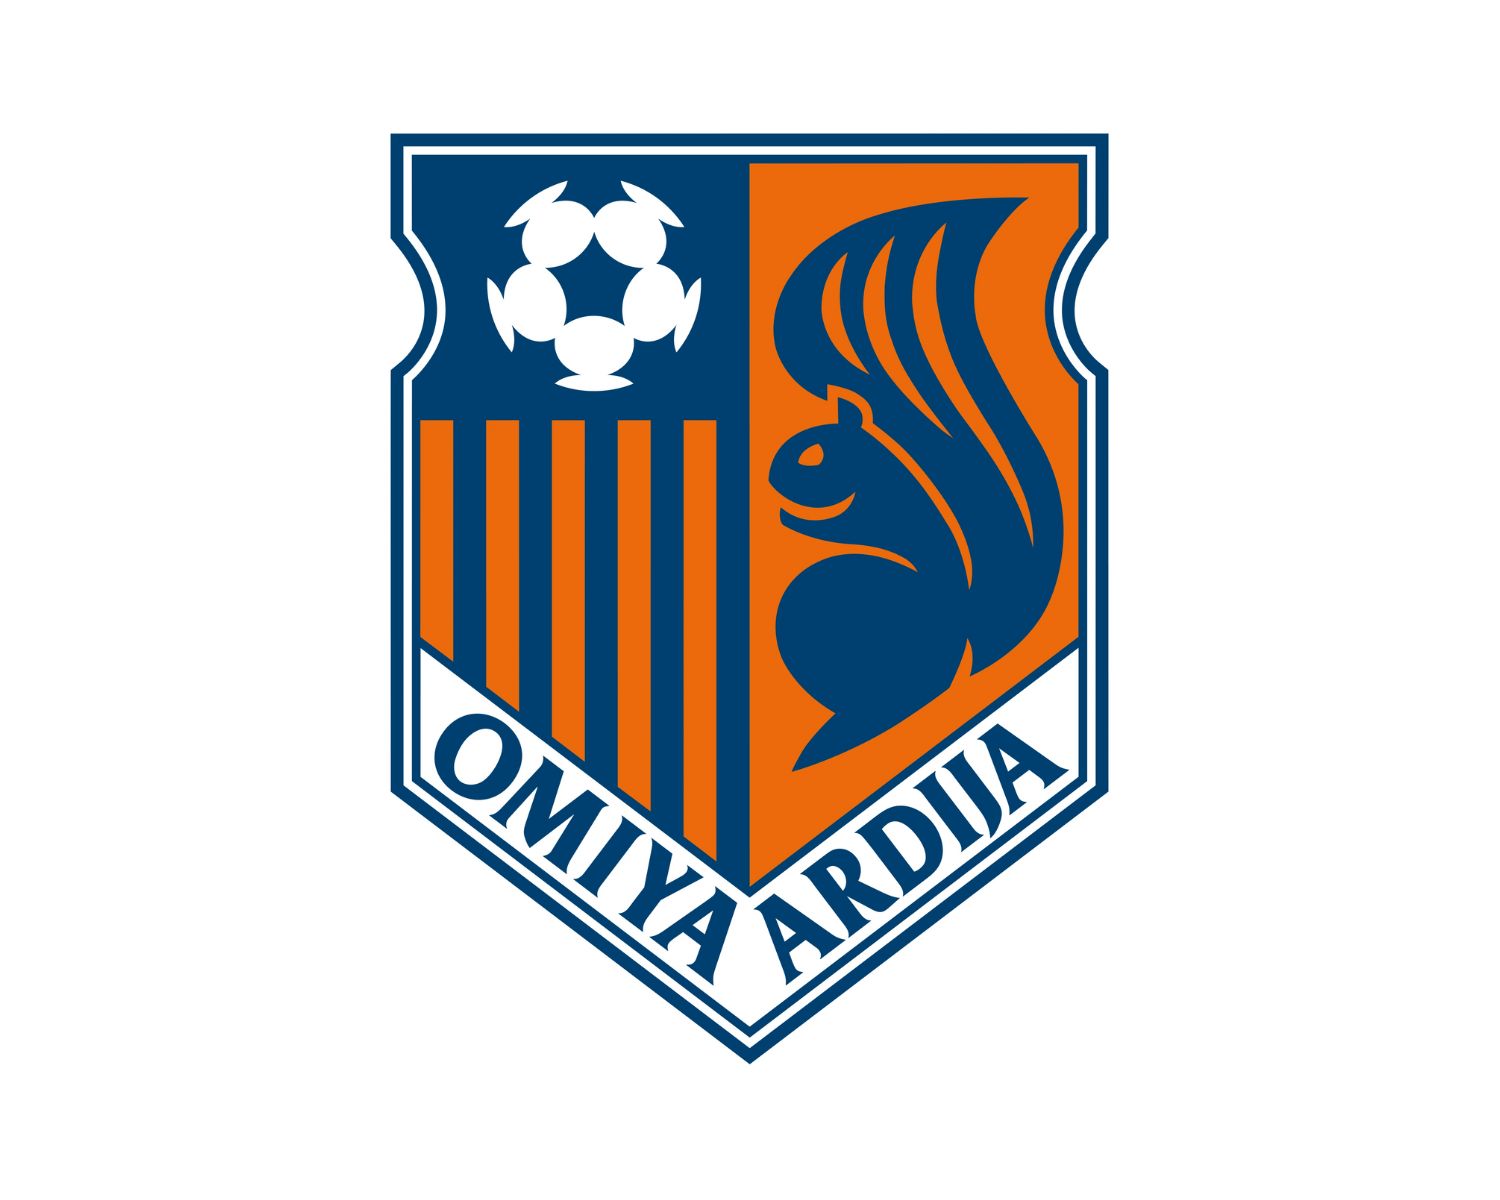 omiya-ardija-20-football-club-facts